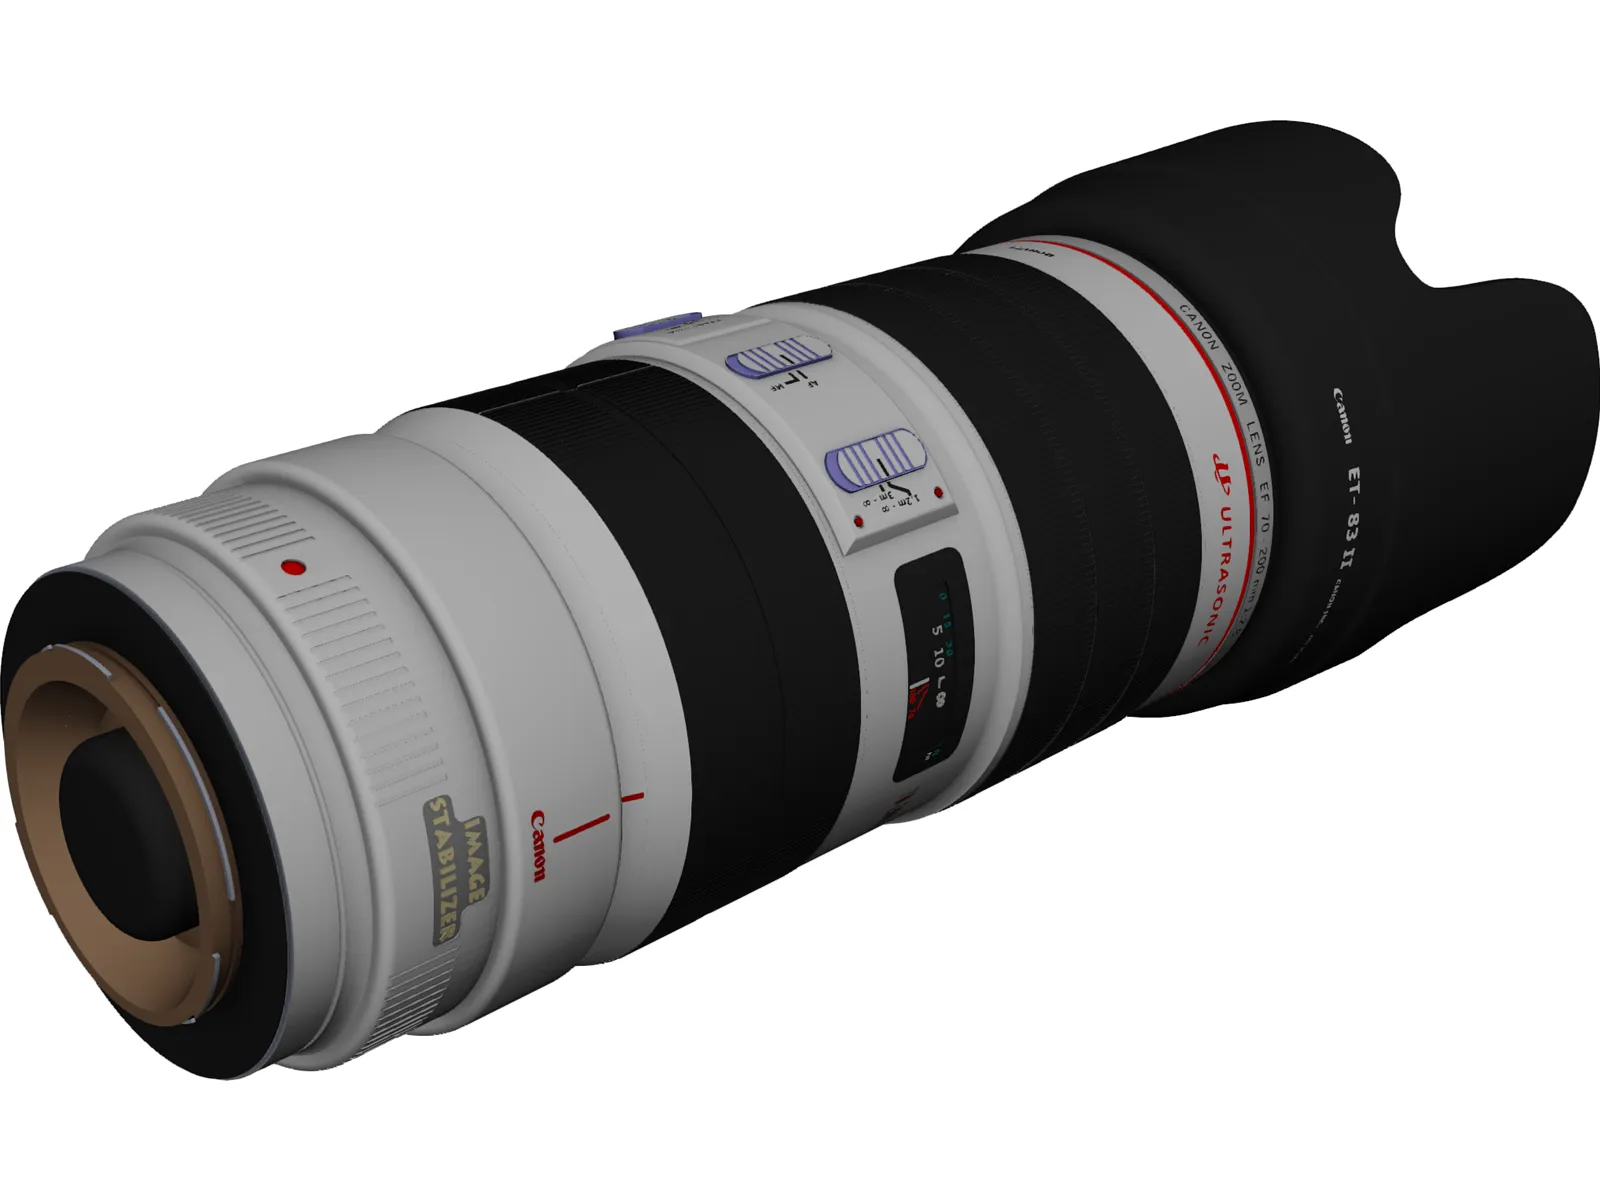 Canon EF 70-200mm f/2.8 L IS USM Lens 3D Model